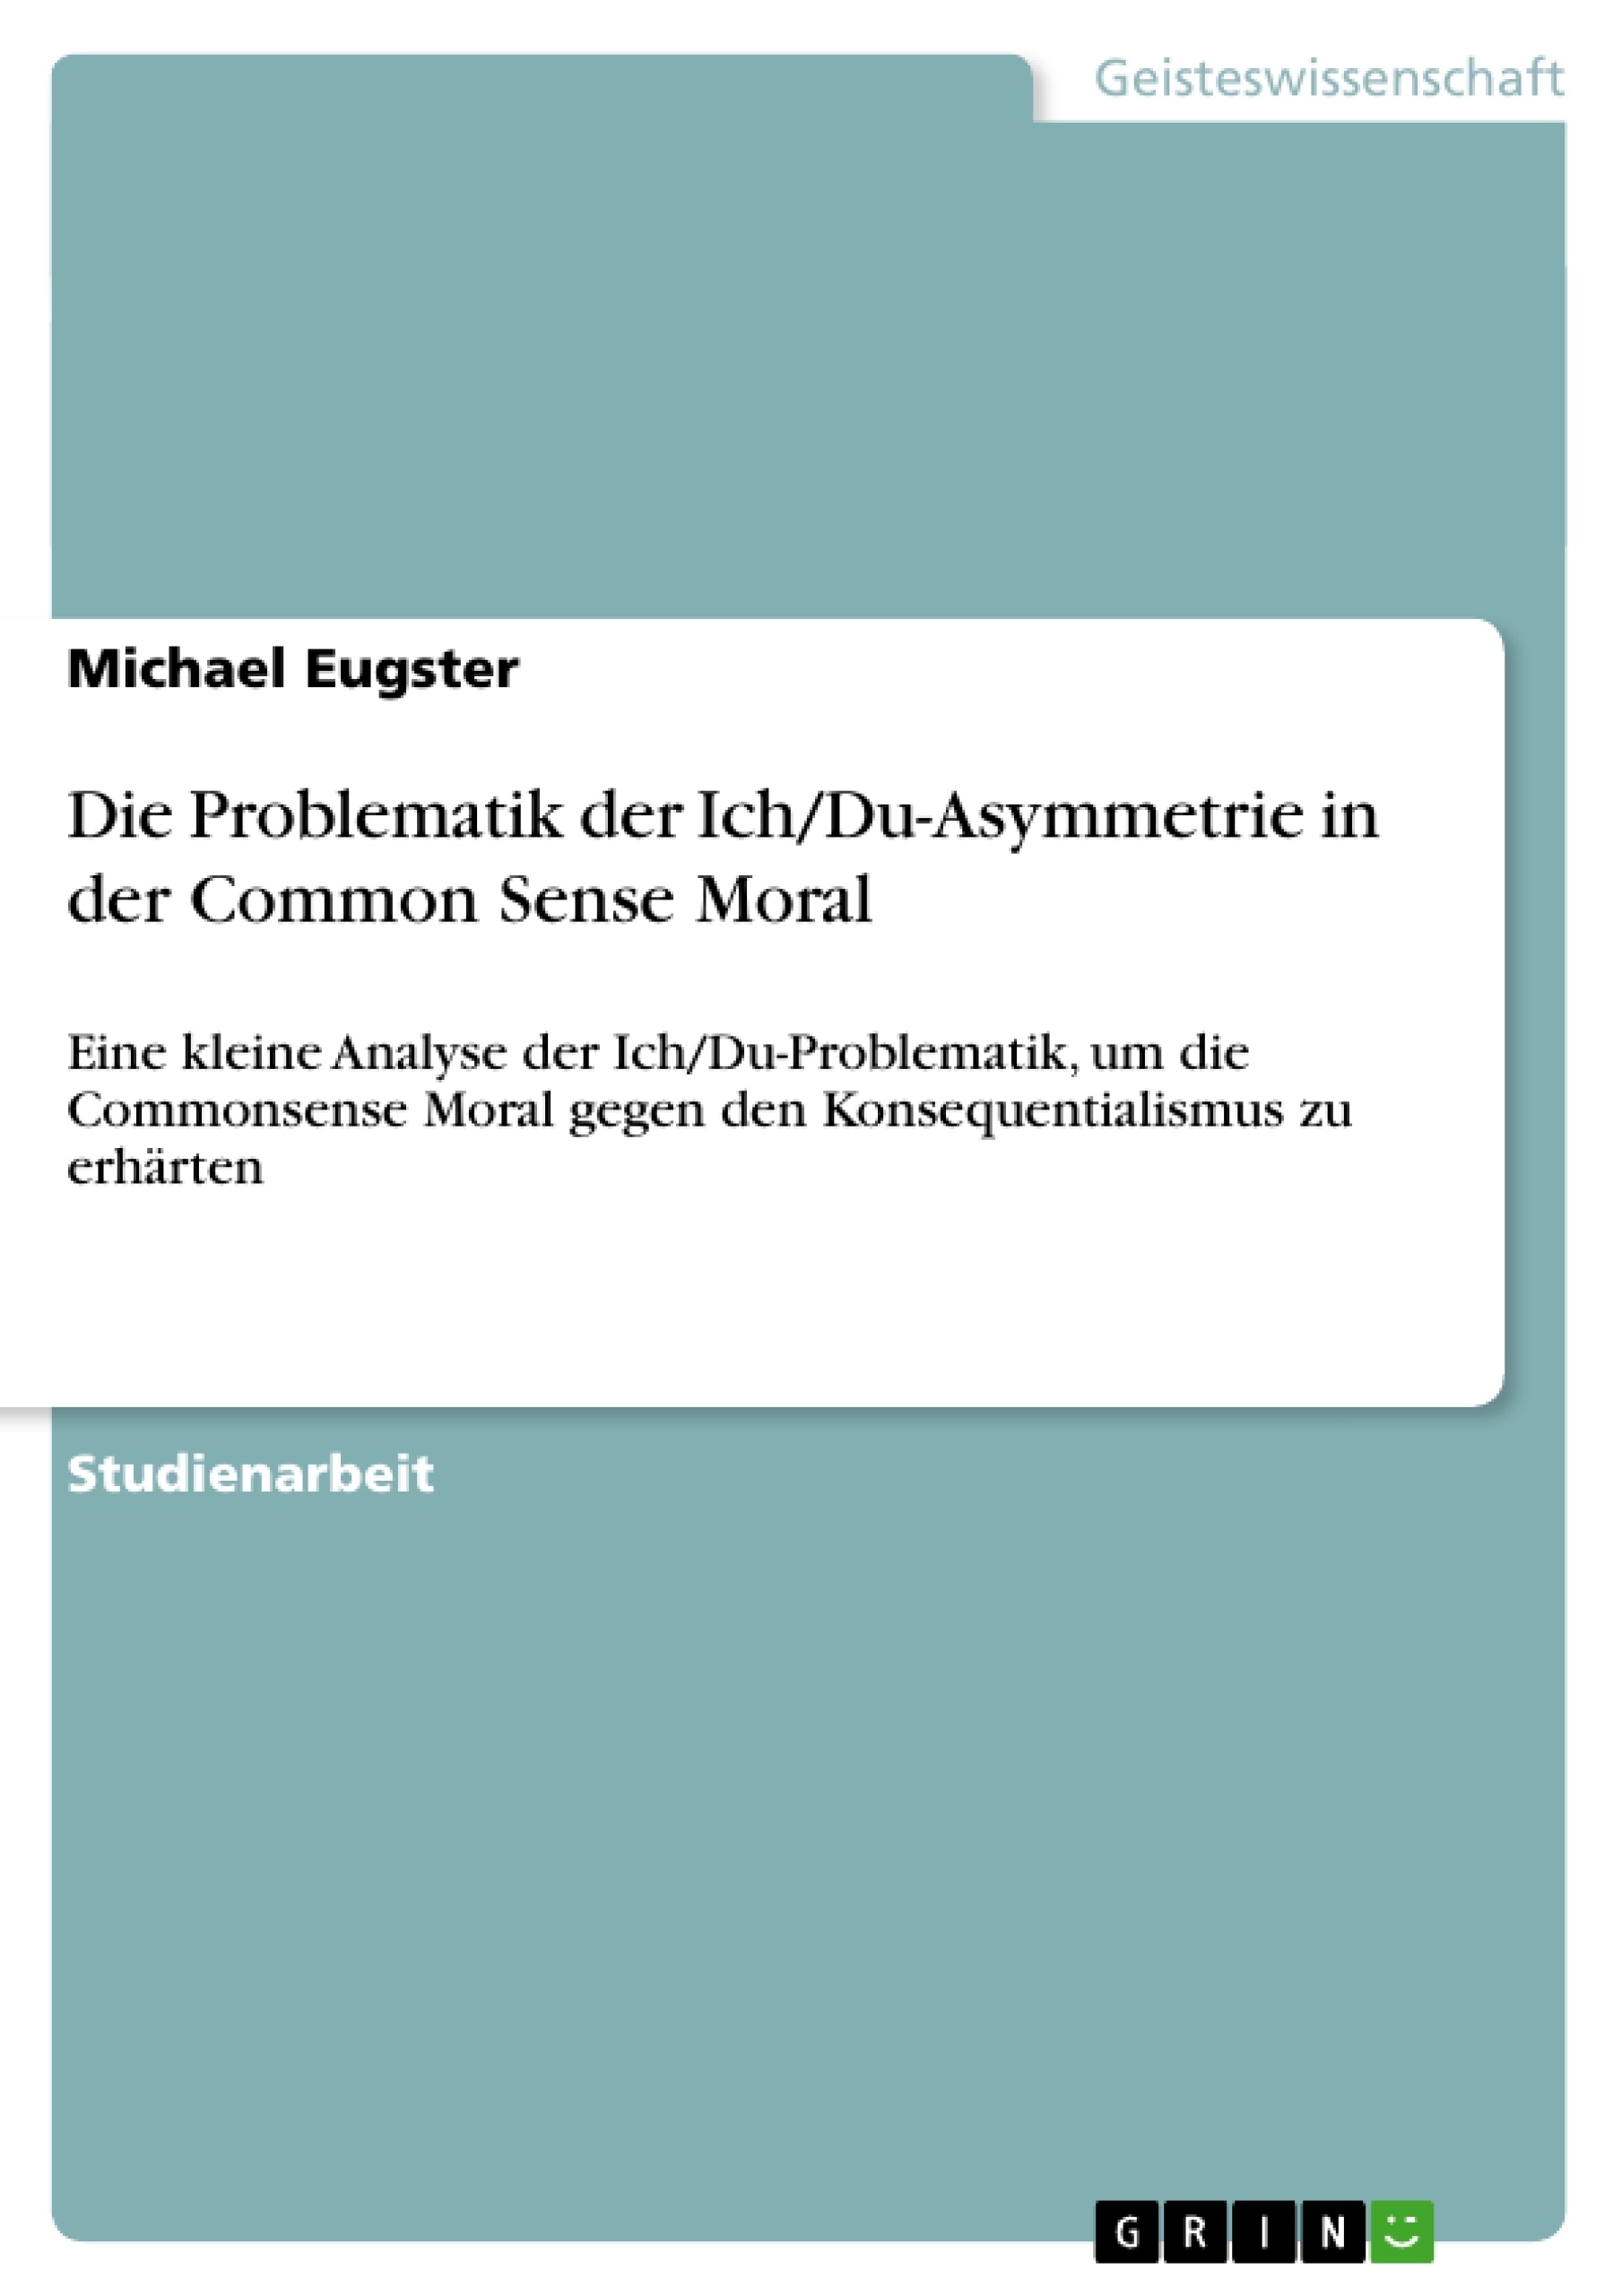 Title: Die Problematik der Ich/Du-Asymmetrie in der Common Sense Moral